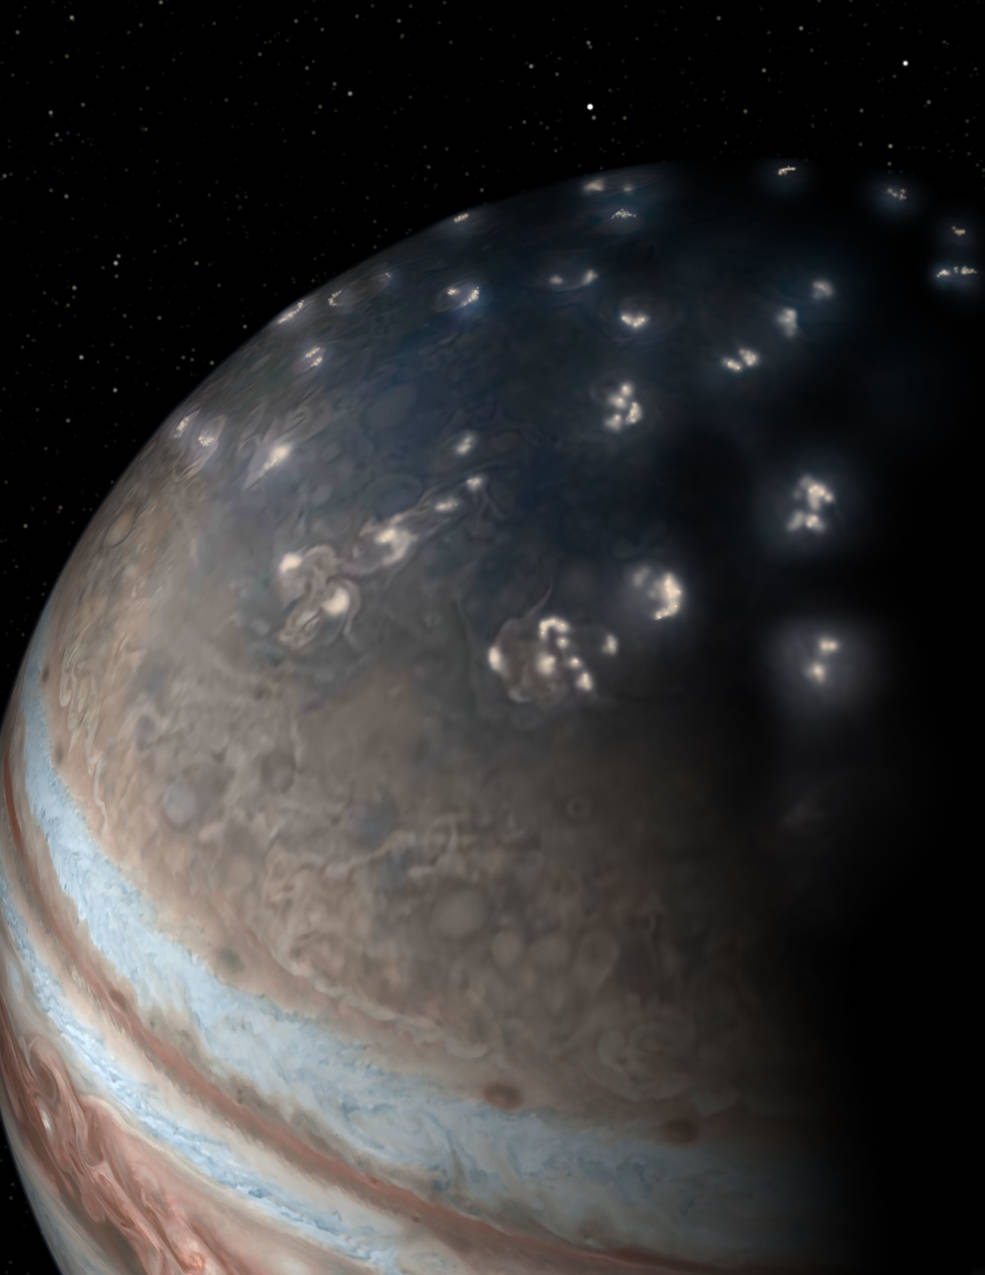 18 06 07 解明に39年を要した木星の雷の謎とは Nasaの木星探査機ジュノーの最新画像と情報を翻訳